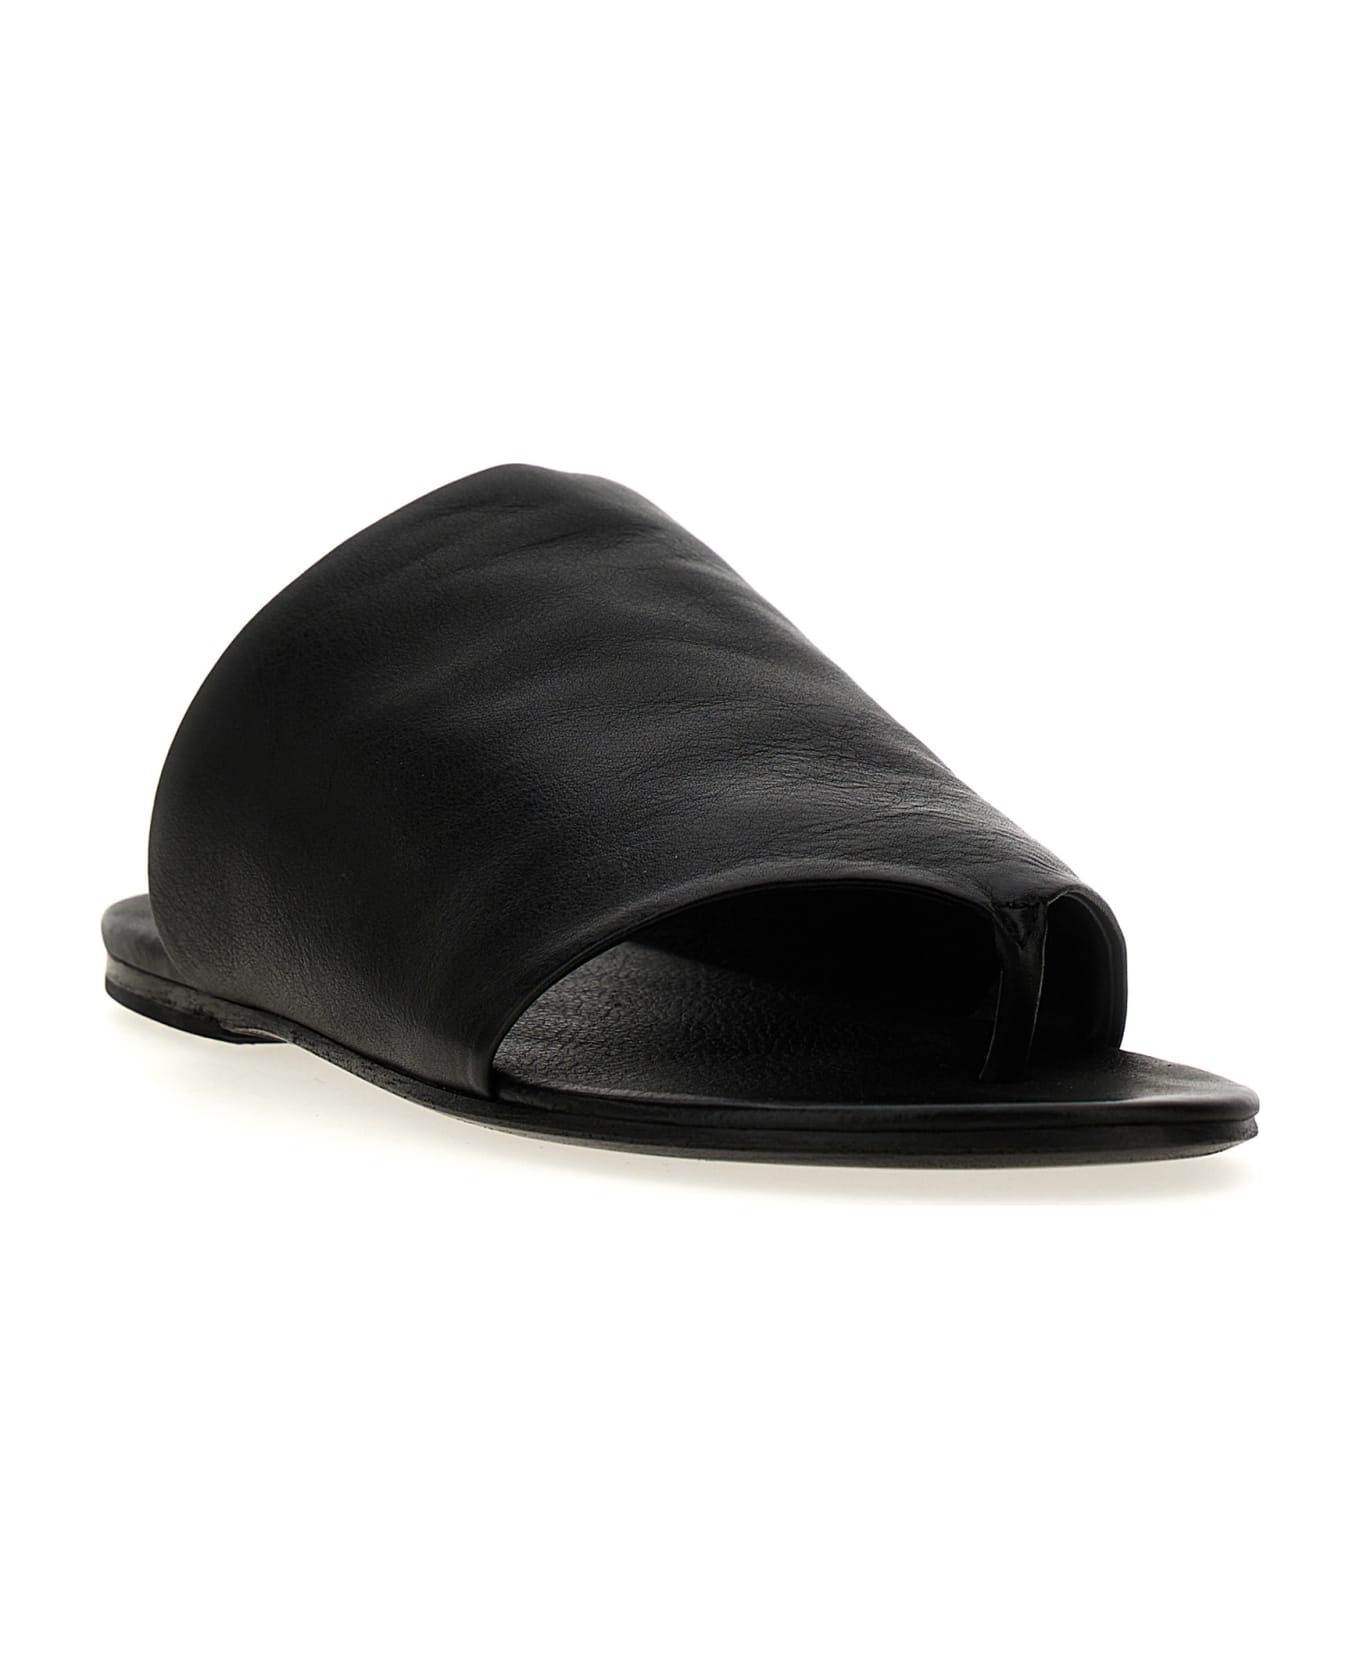 Marsell 'arsella' Sandals - Black  